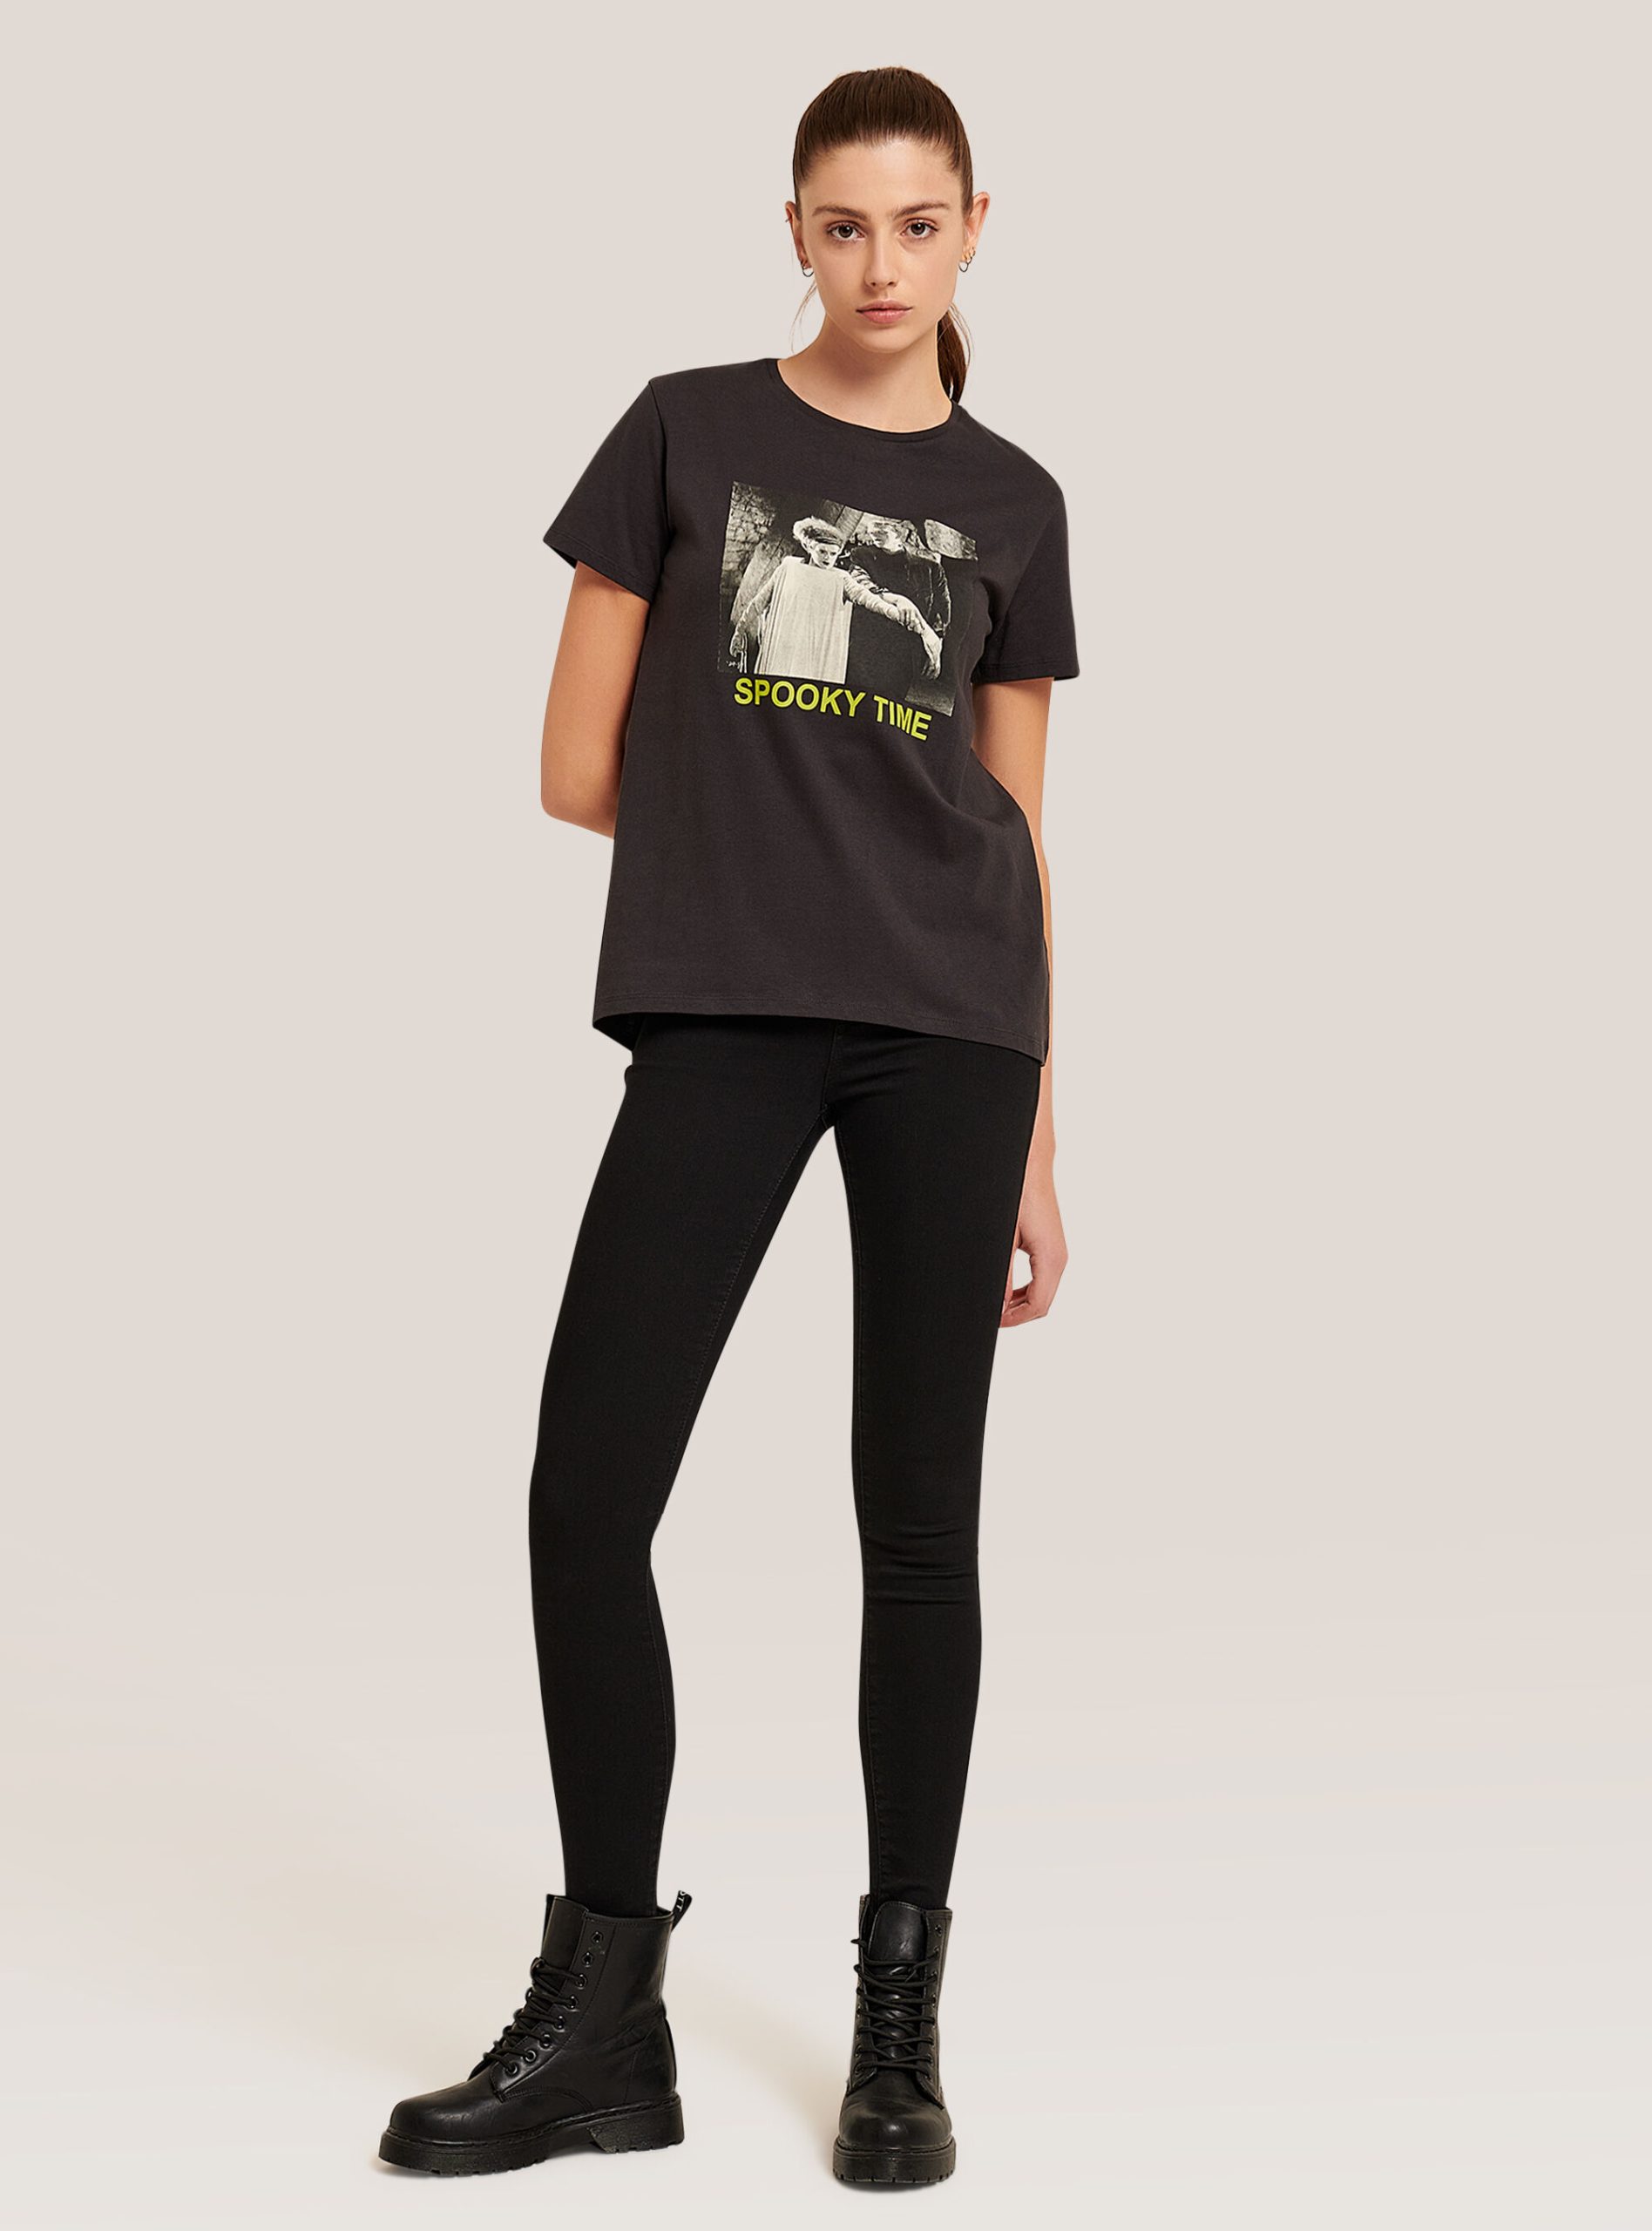 Befehl Frauen C1111 Black Monsters / Alcott T-Shirt T-Shirt – 2